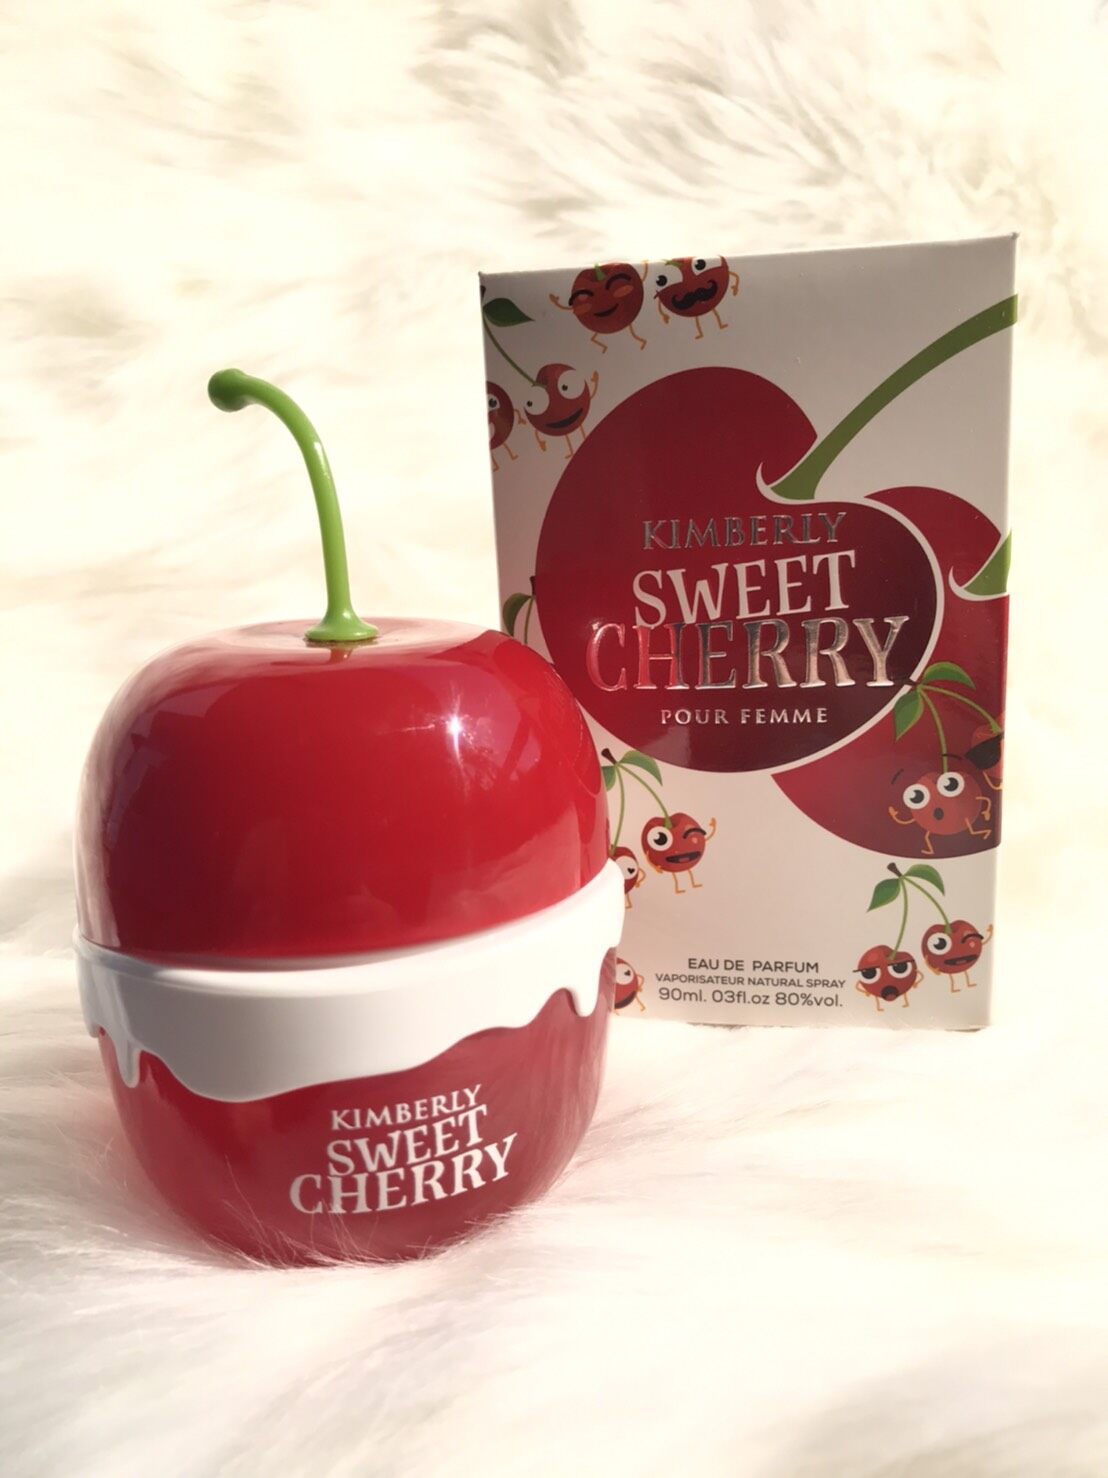 ( แท้ ) น้ำหอมอาหรับ Kimberry Sweet Cherry 100 ml. น้ำหอมผู้หญิง กลิ่นเทียบ Kimoji Cherry คิม คาร์ดาเชียน ขวดน่ารักๆ กลิ่นหอมหวานสดชื่น จากเชอร์รี่ ราสเบอร์